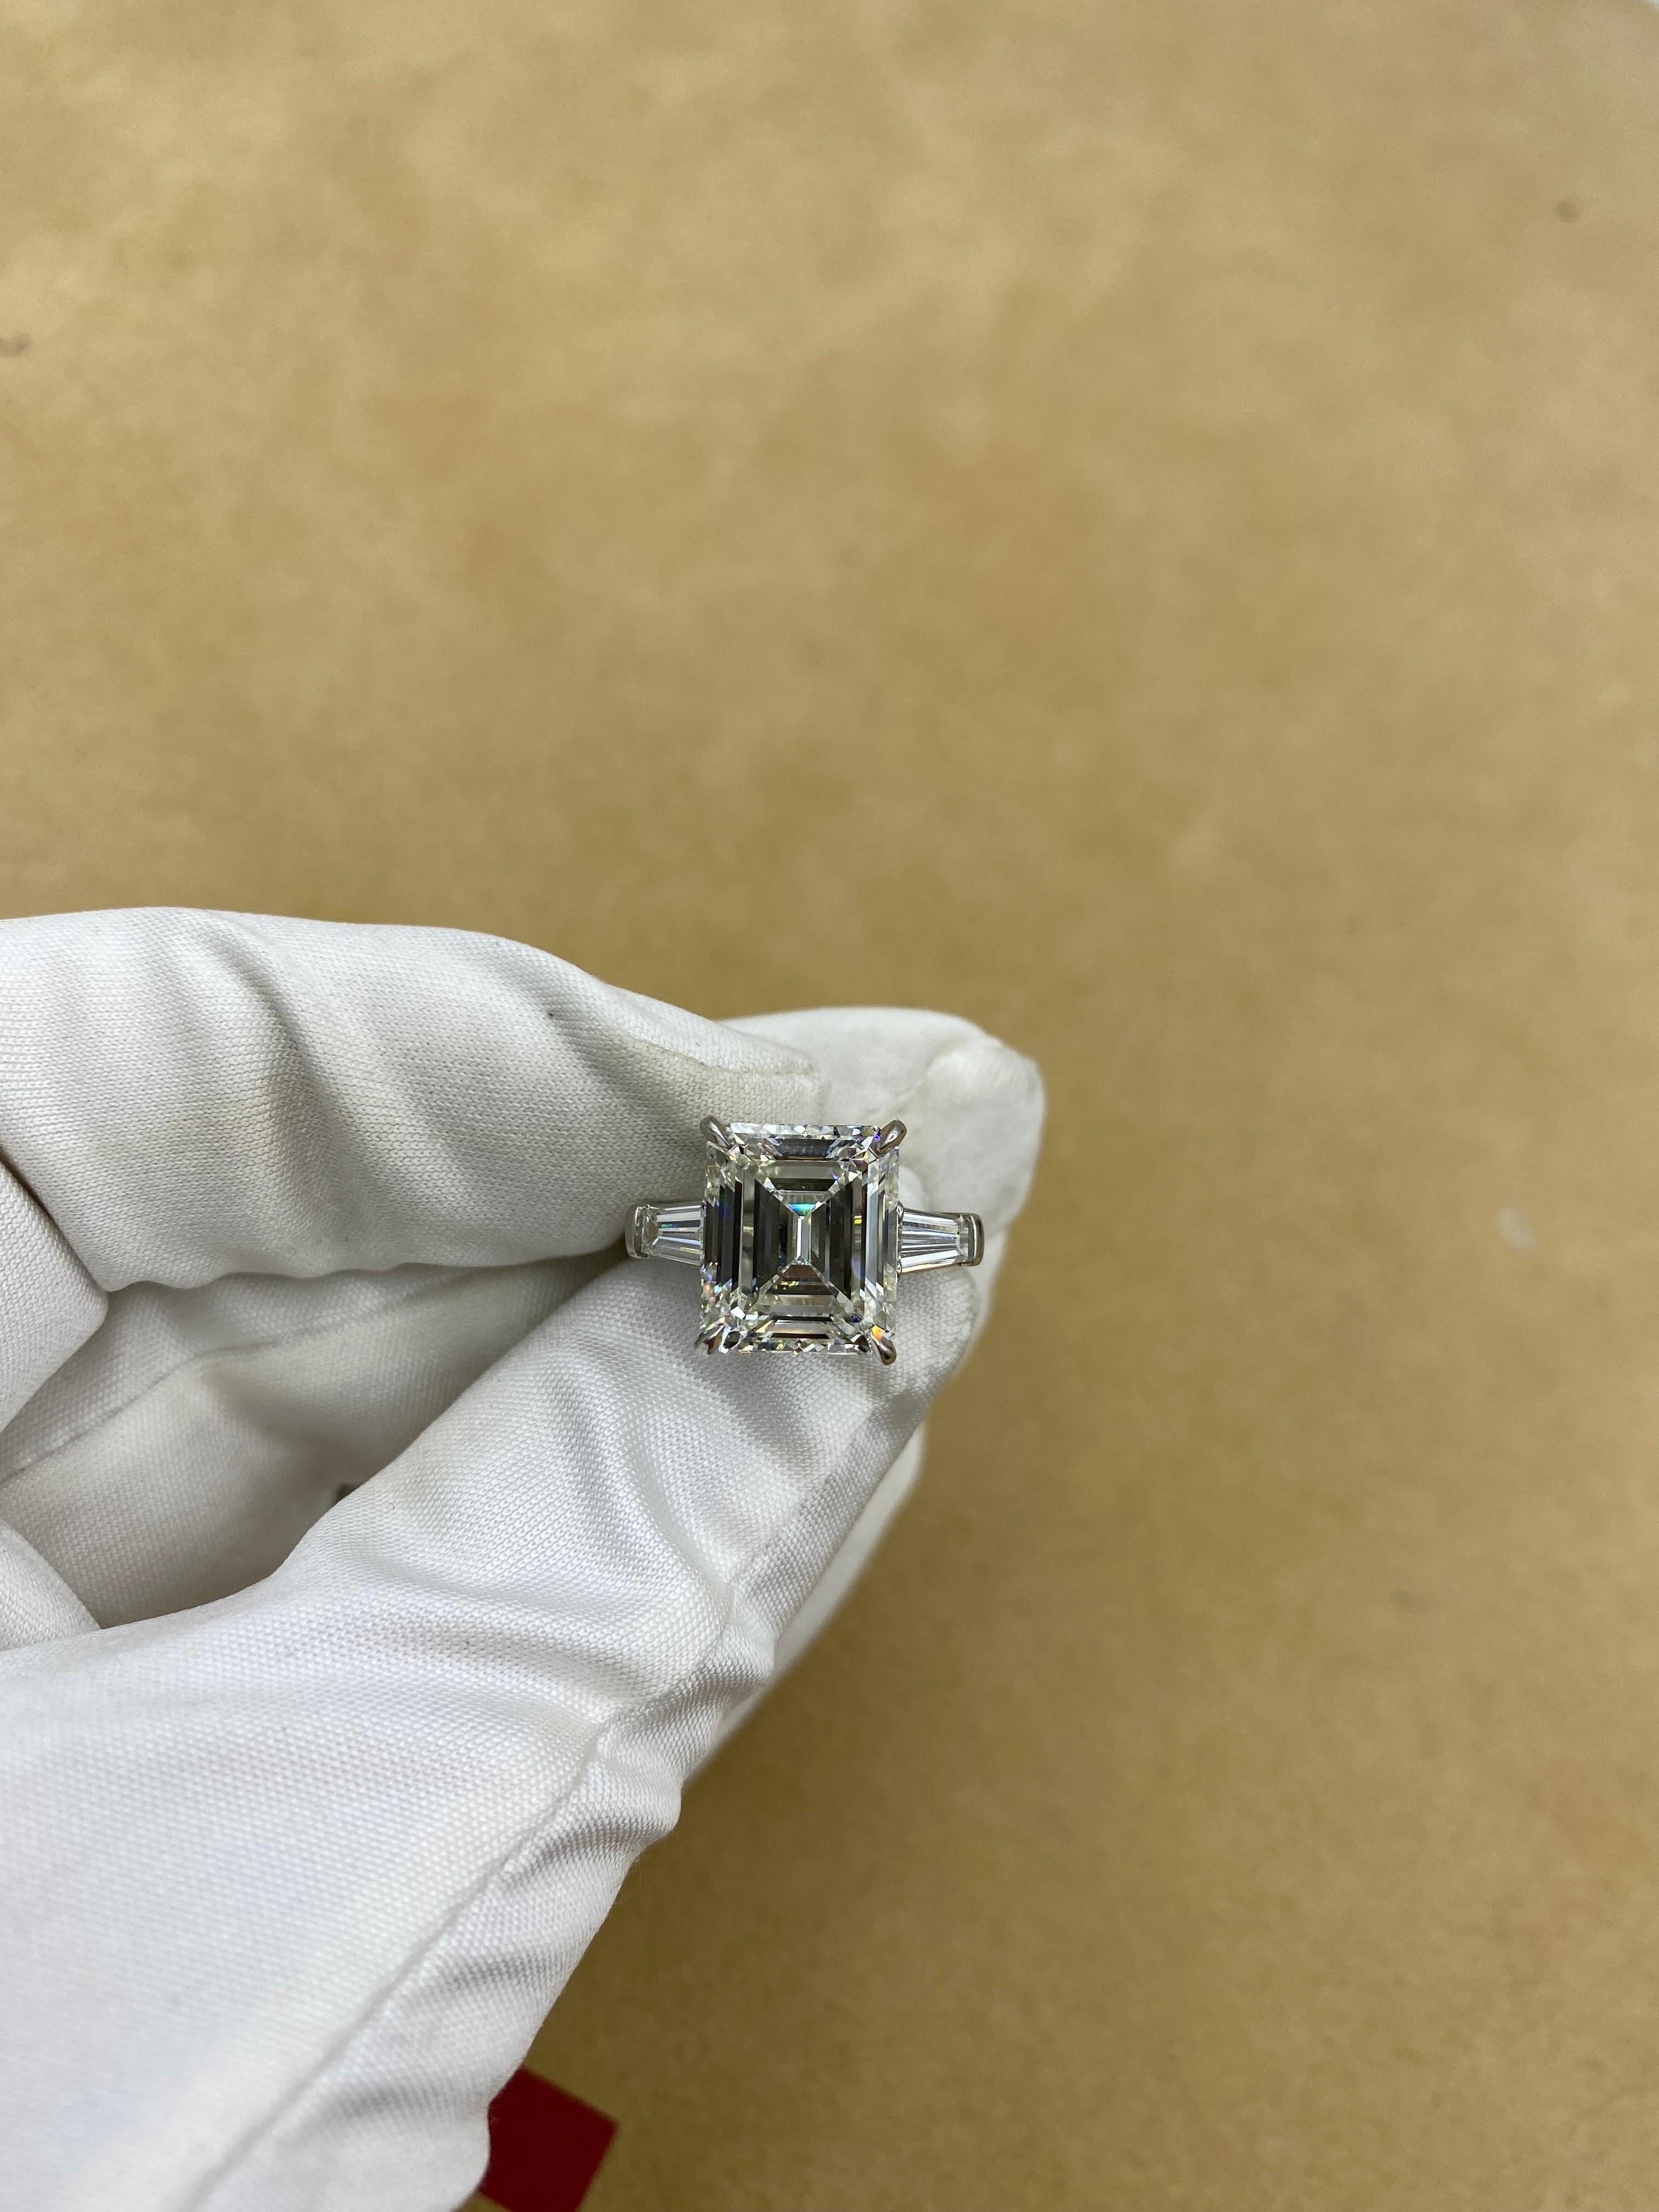 From The Vault at Emilio Jewelry Situé sur l'emblématique Cinquième Avenue de New York,
Demandez une vidéo détaillée ! 
Le centre de ce diamant très spécial et rare, certifié Gia, de taille émeraude naturelle, pèse plus de 7 carats. Poids total